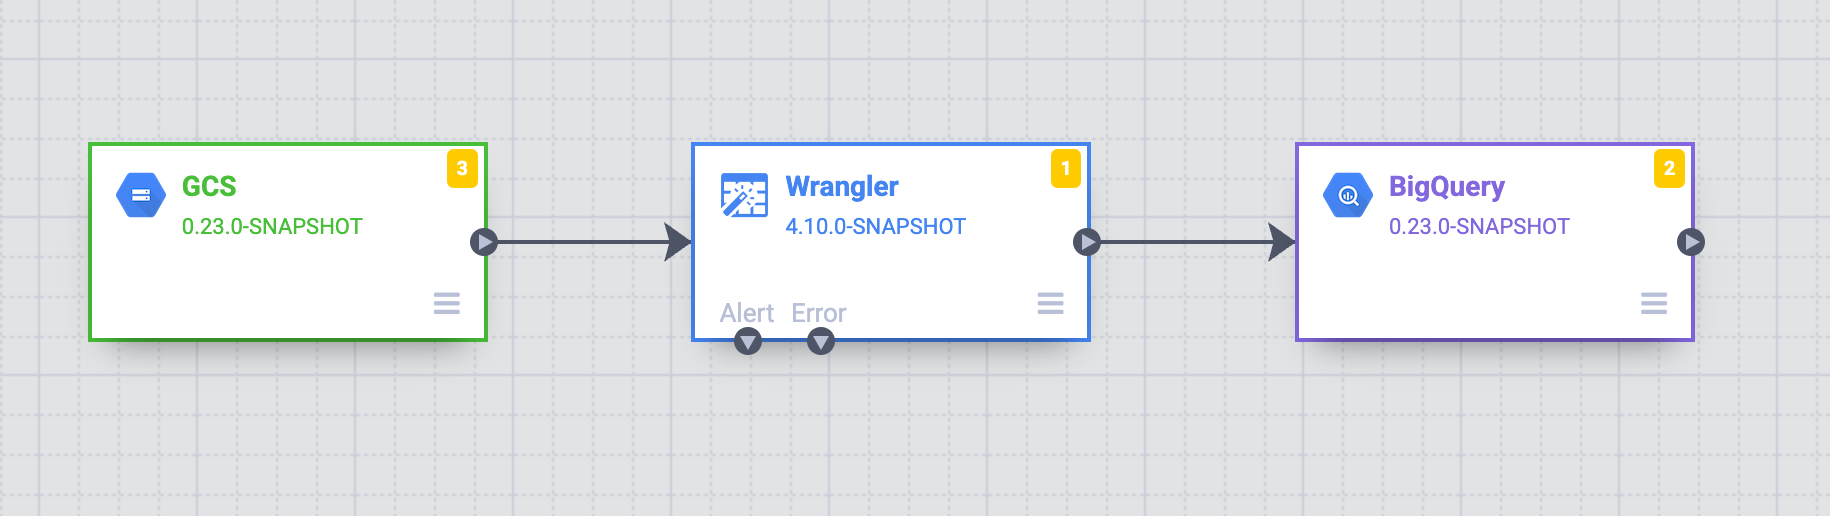 Canalización de datos que muestra la fuente de Cloud Storage, la transformación de Wrangler y el receptor de BigQuery.